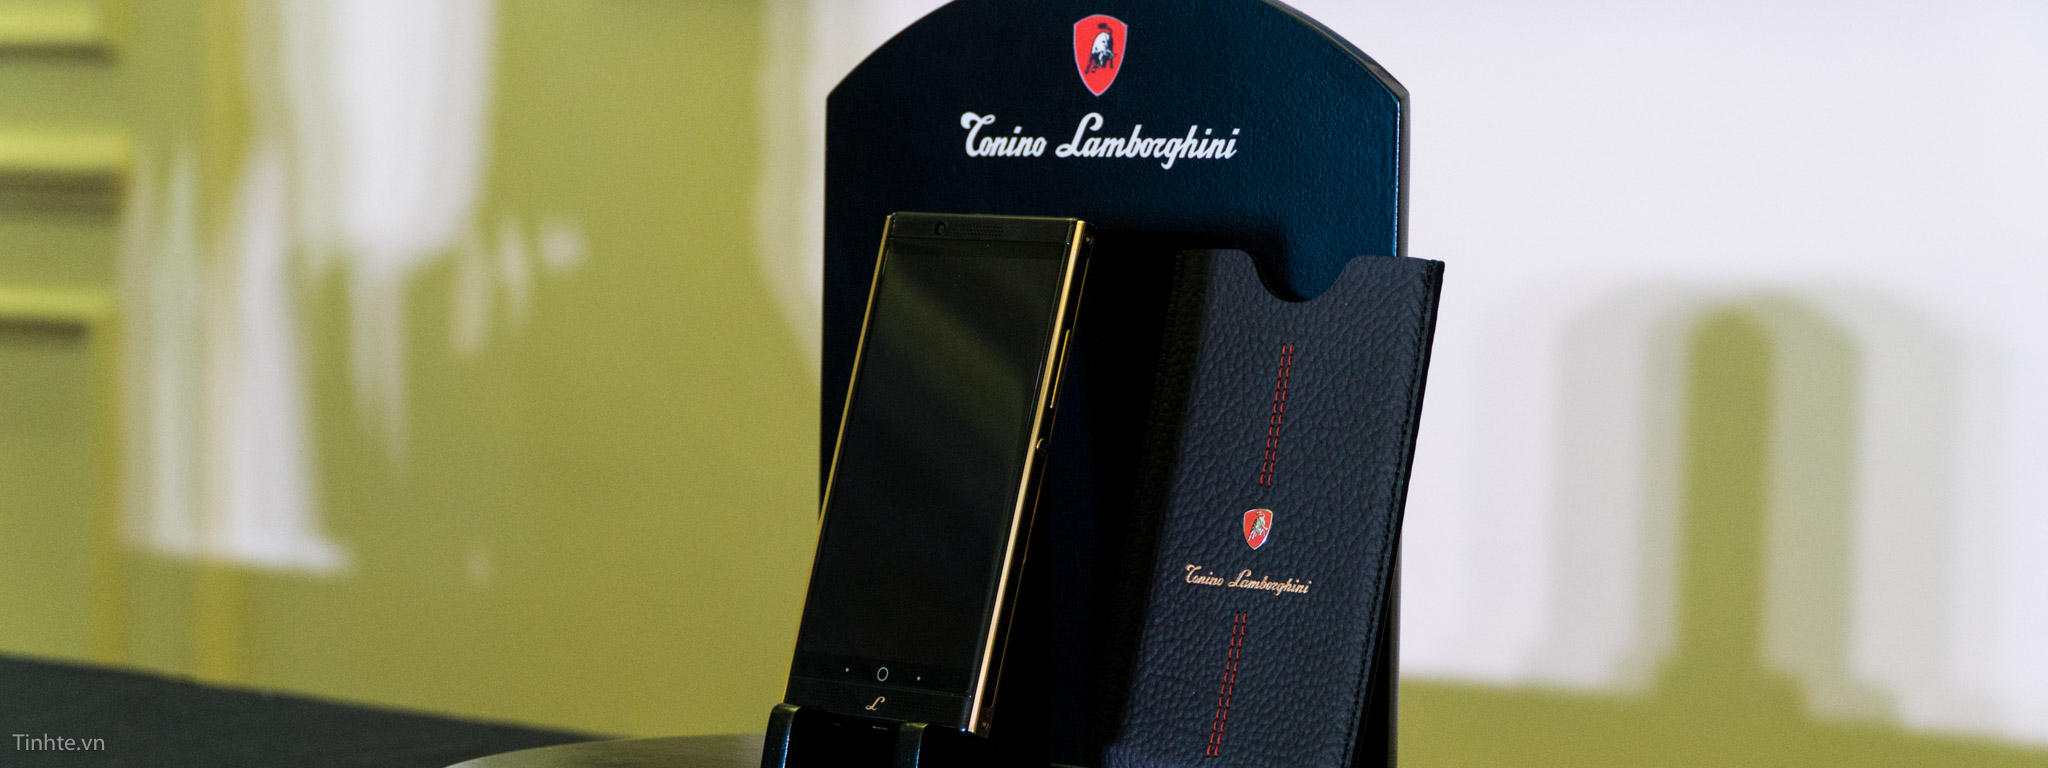 Lamborghini Alpha One được phân phối chính hãng tại Việt Nam, giá 55 triệu đồng